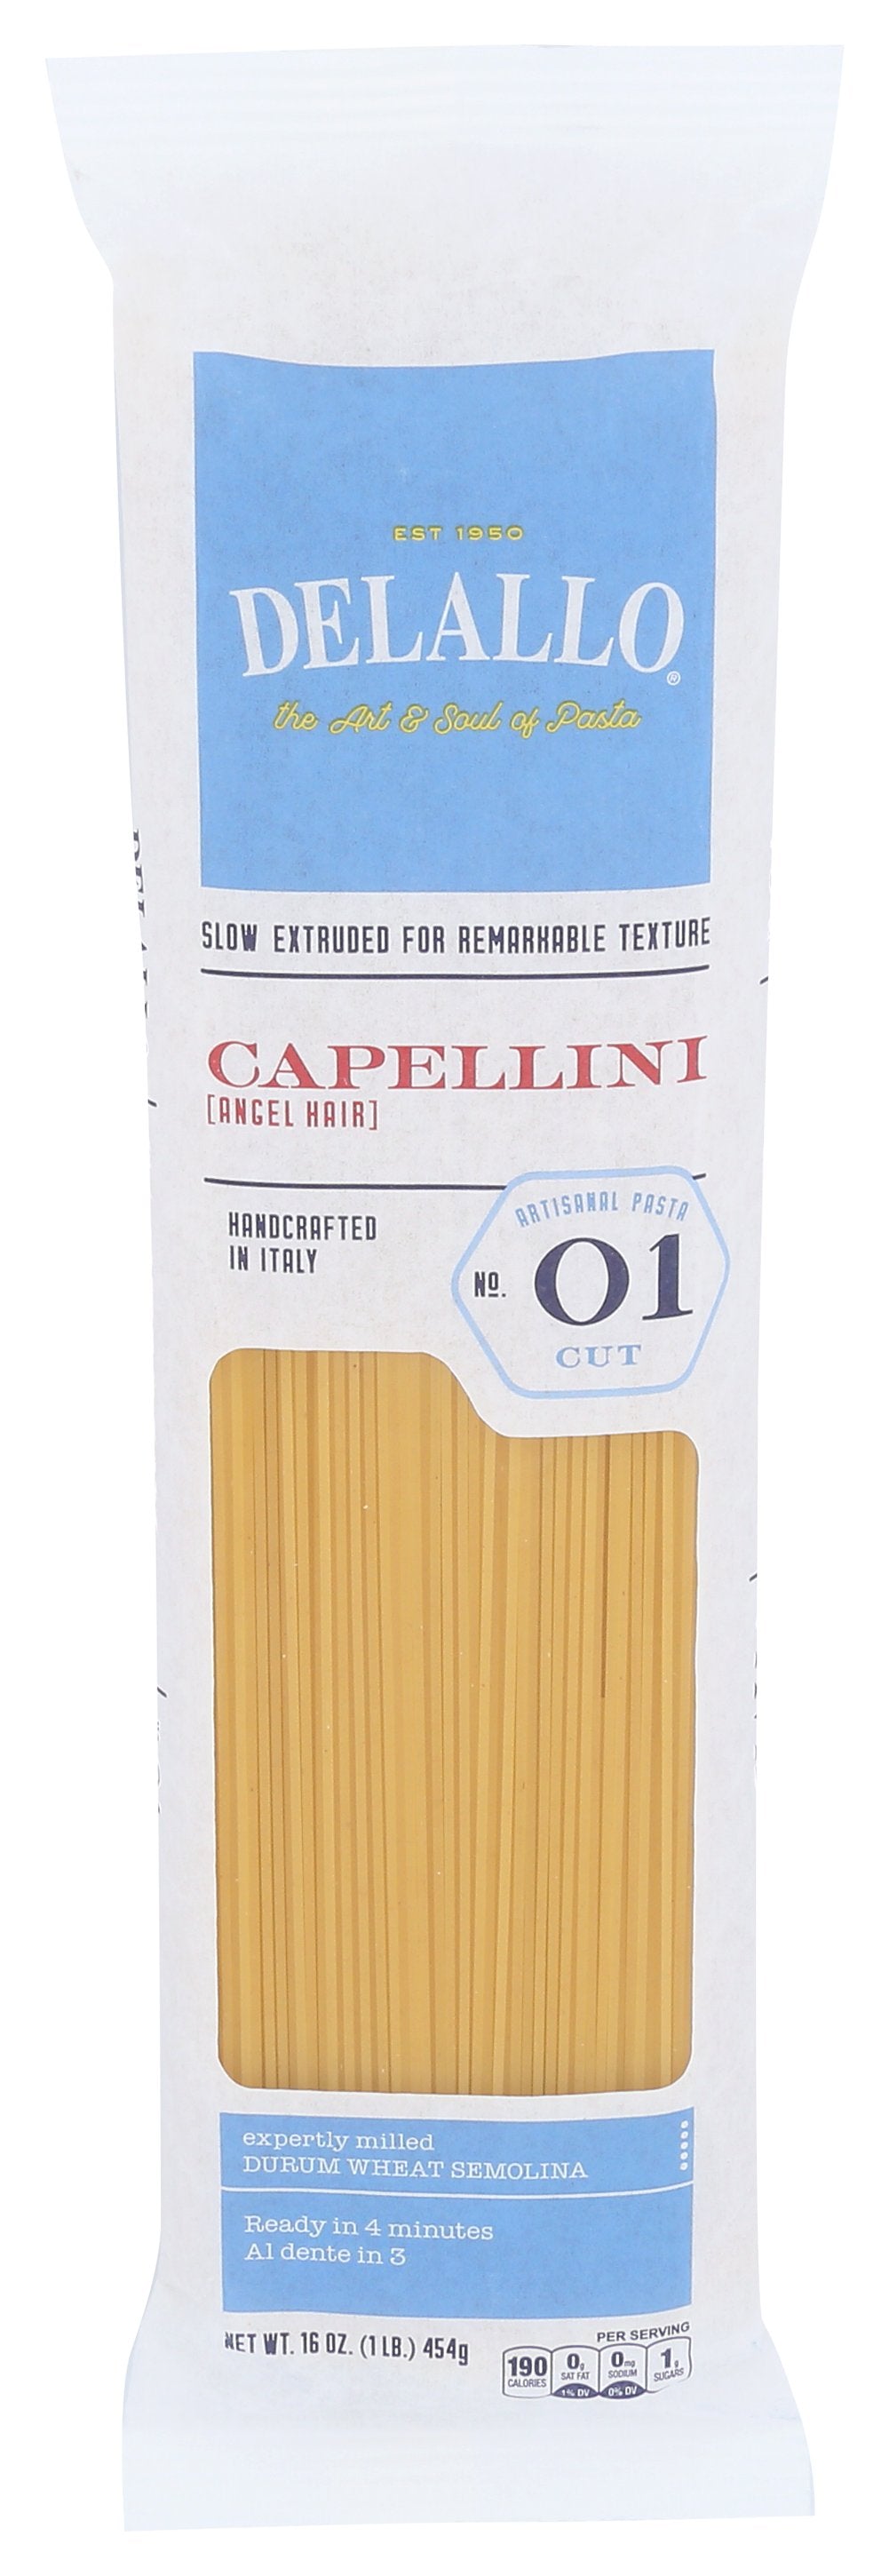 DELALLO CAPELLINI #01